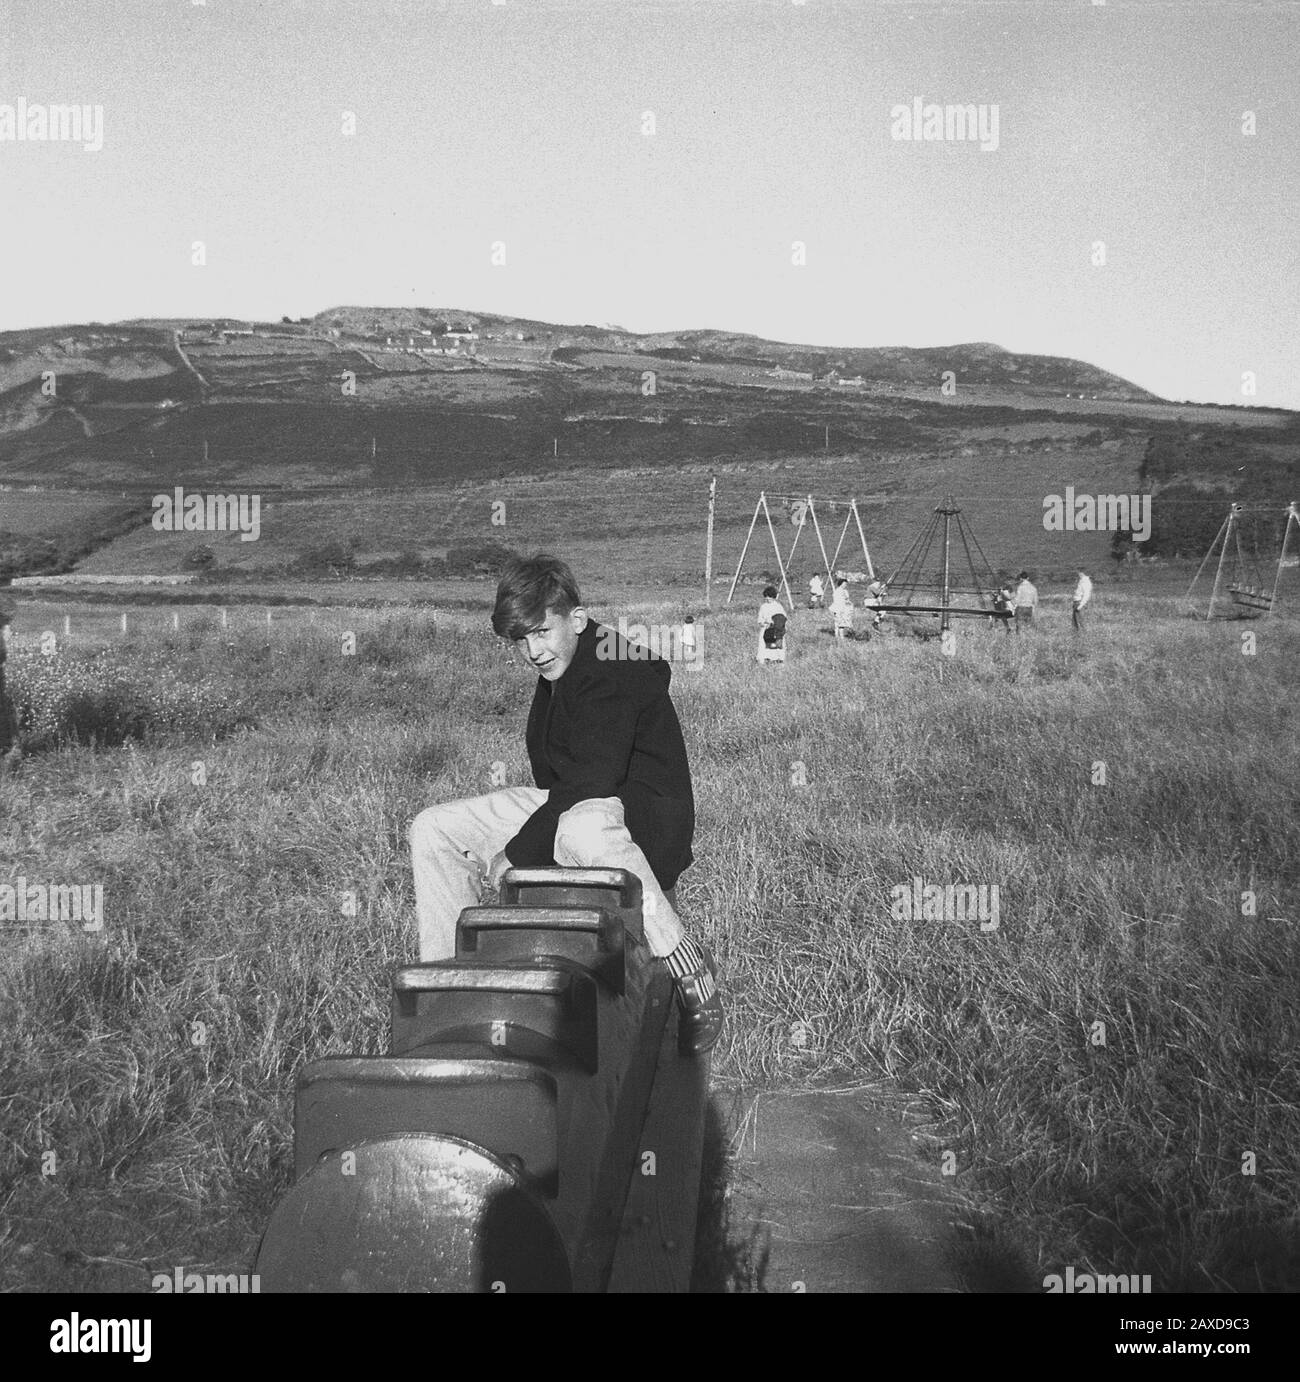 1950er Jahre, historisch gesehen, saß ein Teenager-Junge auf einem Metallschaukelpferd, möglicherweise einem britischen Wicksteed-Modell, draußen auf einem Spielplatz auf einem Grasfeld, in einem ländlichen Tal in der Nähe von Liverpool, England, Großbritannien. In der Ferne gesehen, spielen einige Kinder auf einem Hexenhut, ein häufiger Anblick auf Spielplätzen in dieser Zeit. Stockfoto